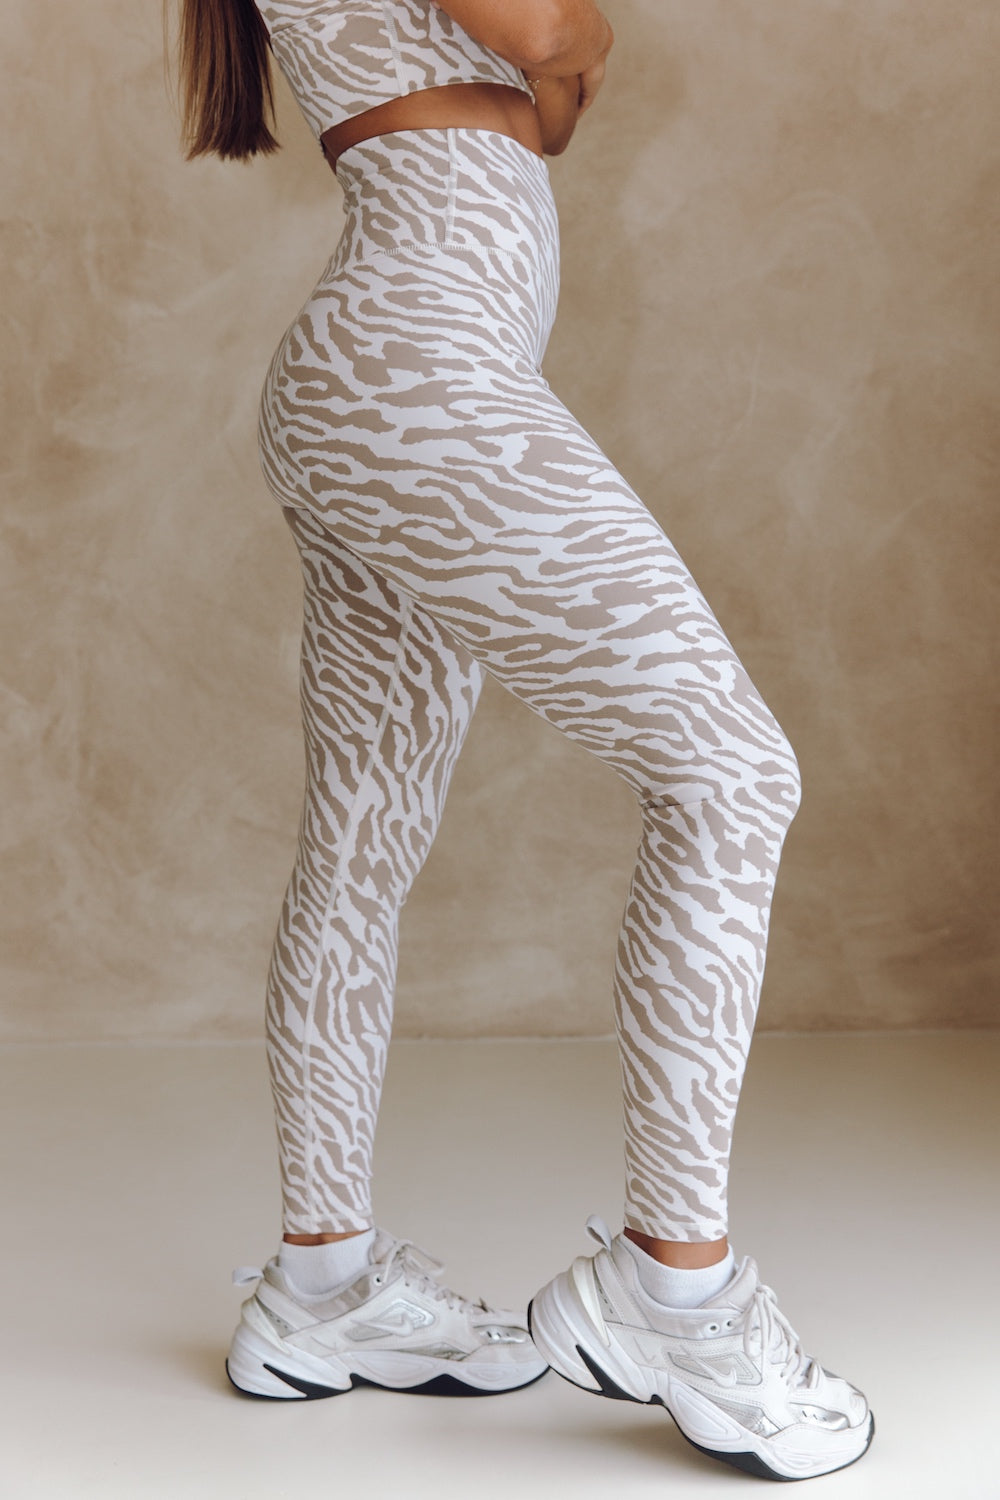 Astoria activewear Astoria LUXE BALANCE Full Length Mesh Legging - Poppy -  Poppy M